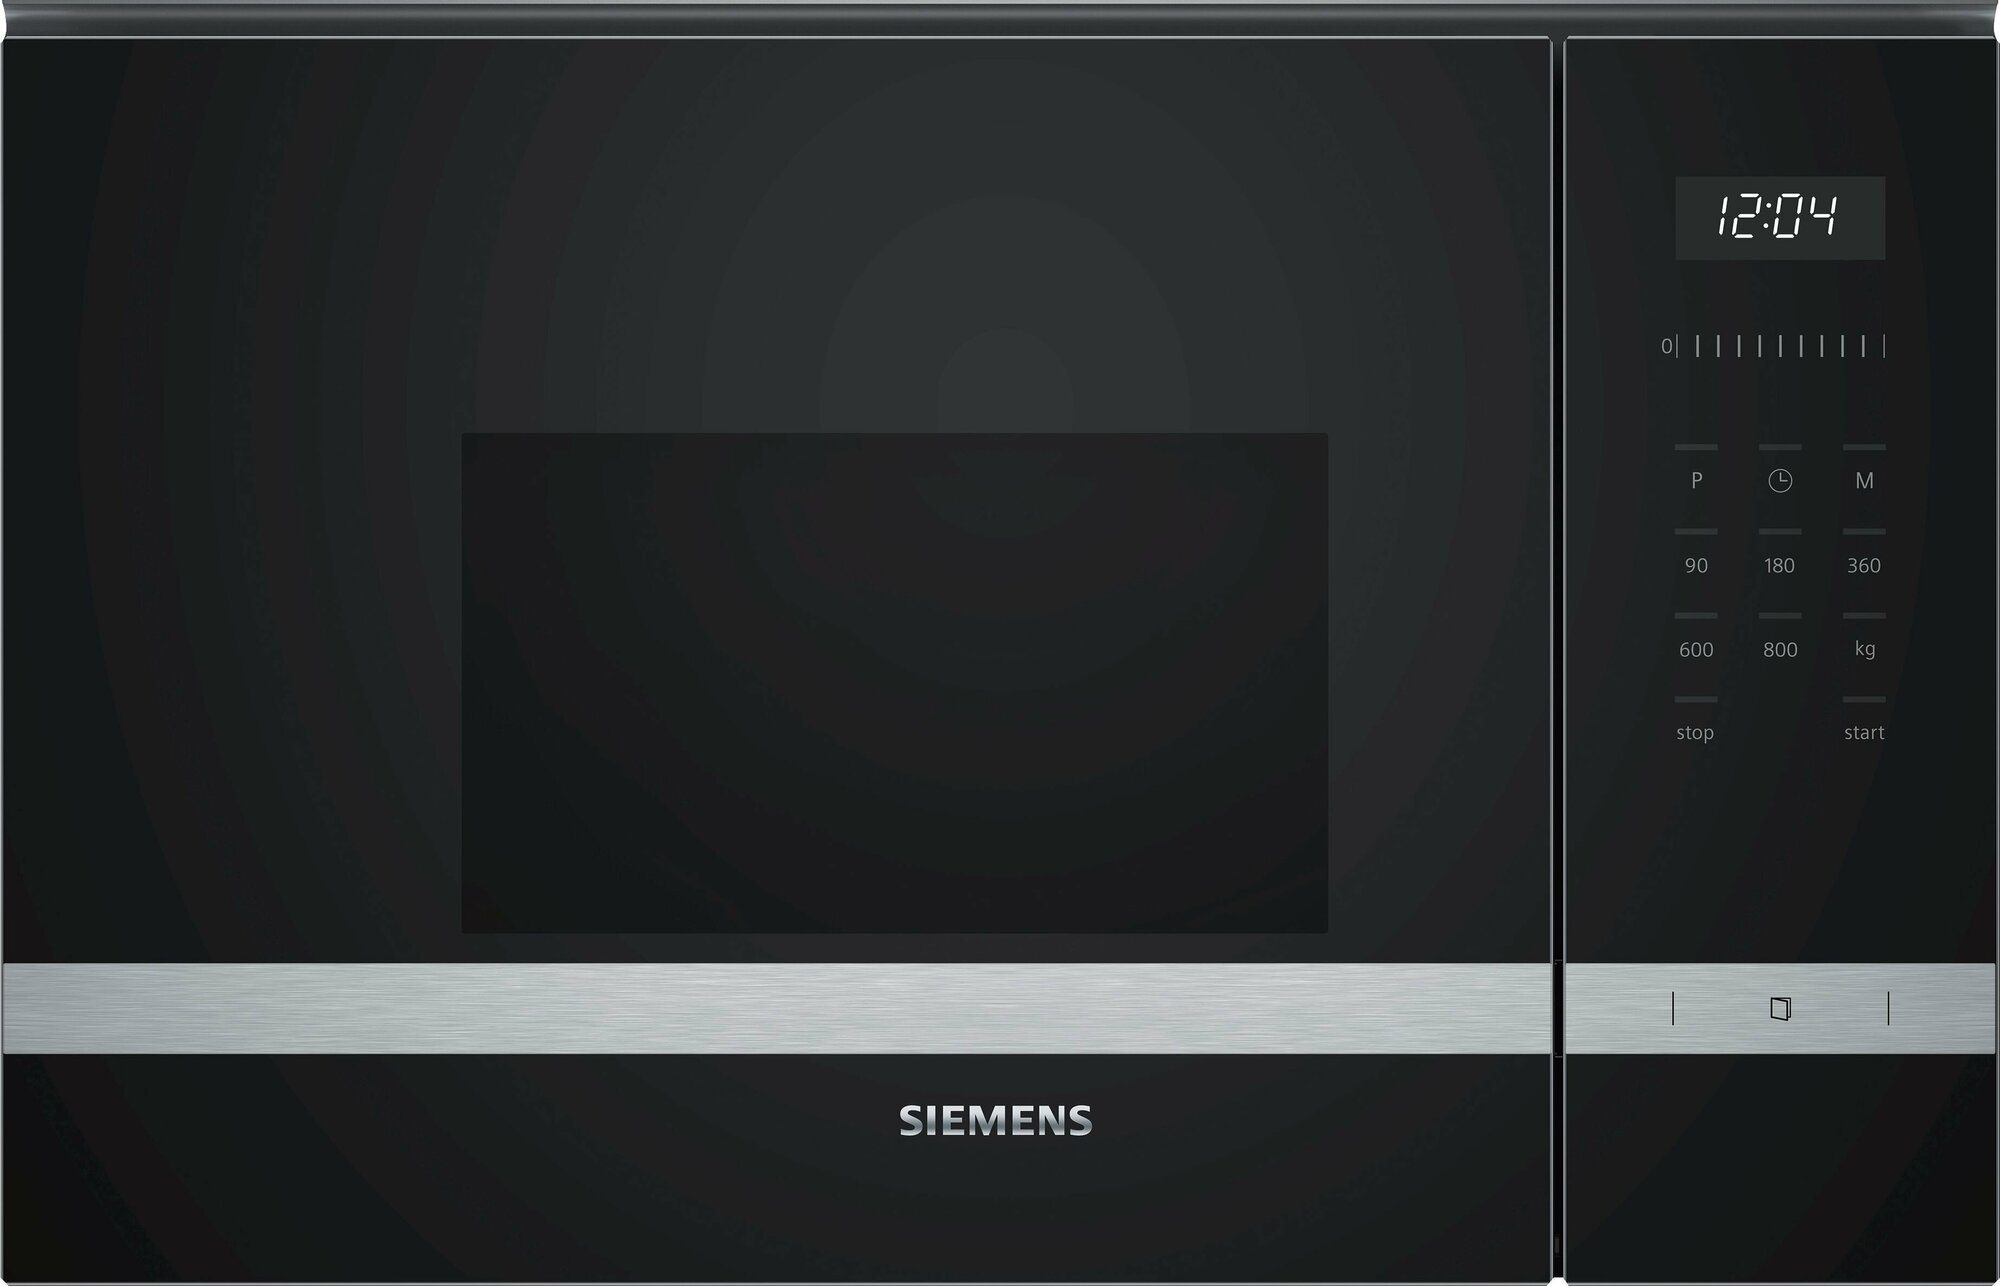 Микроволновая печь Siemens Встраиваемая микроволновая печь Siemens/ розничный эксклюзив! 20л, 800Вт, цвет: черный